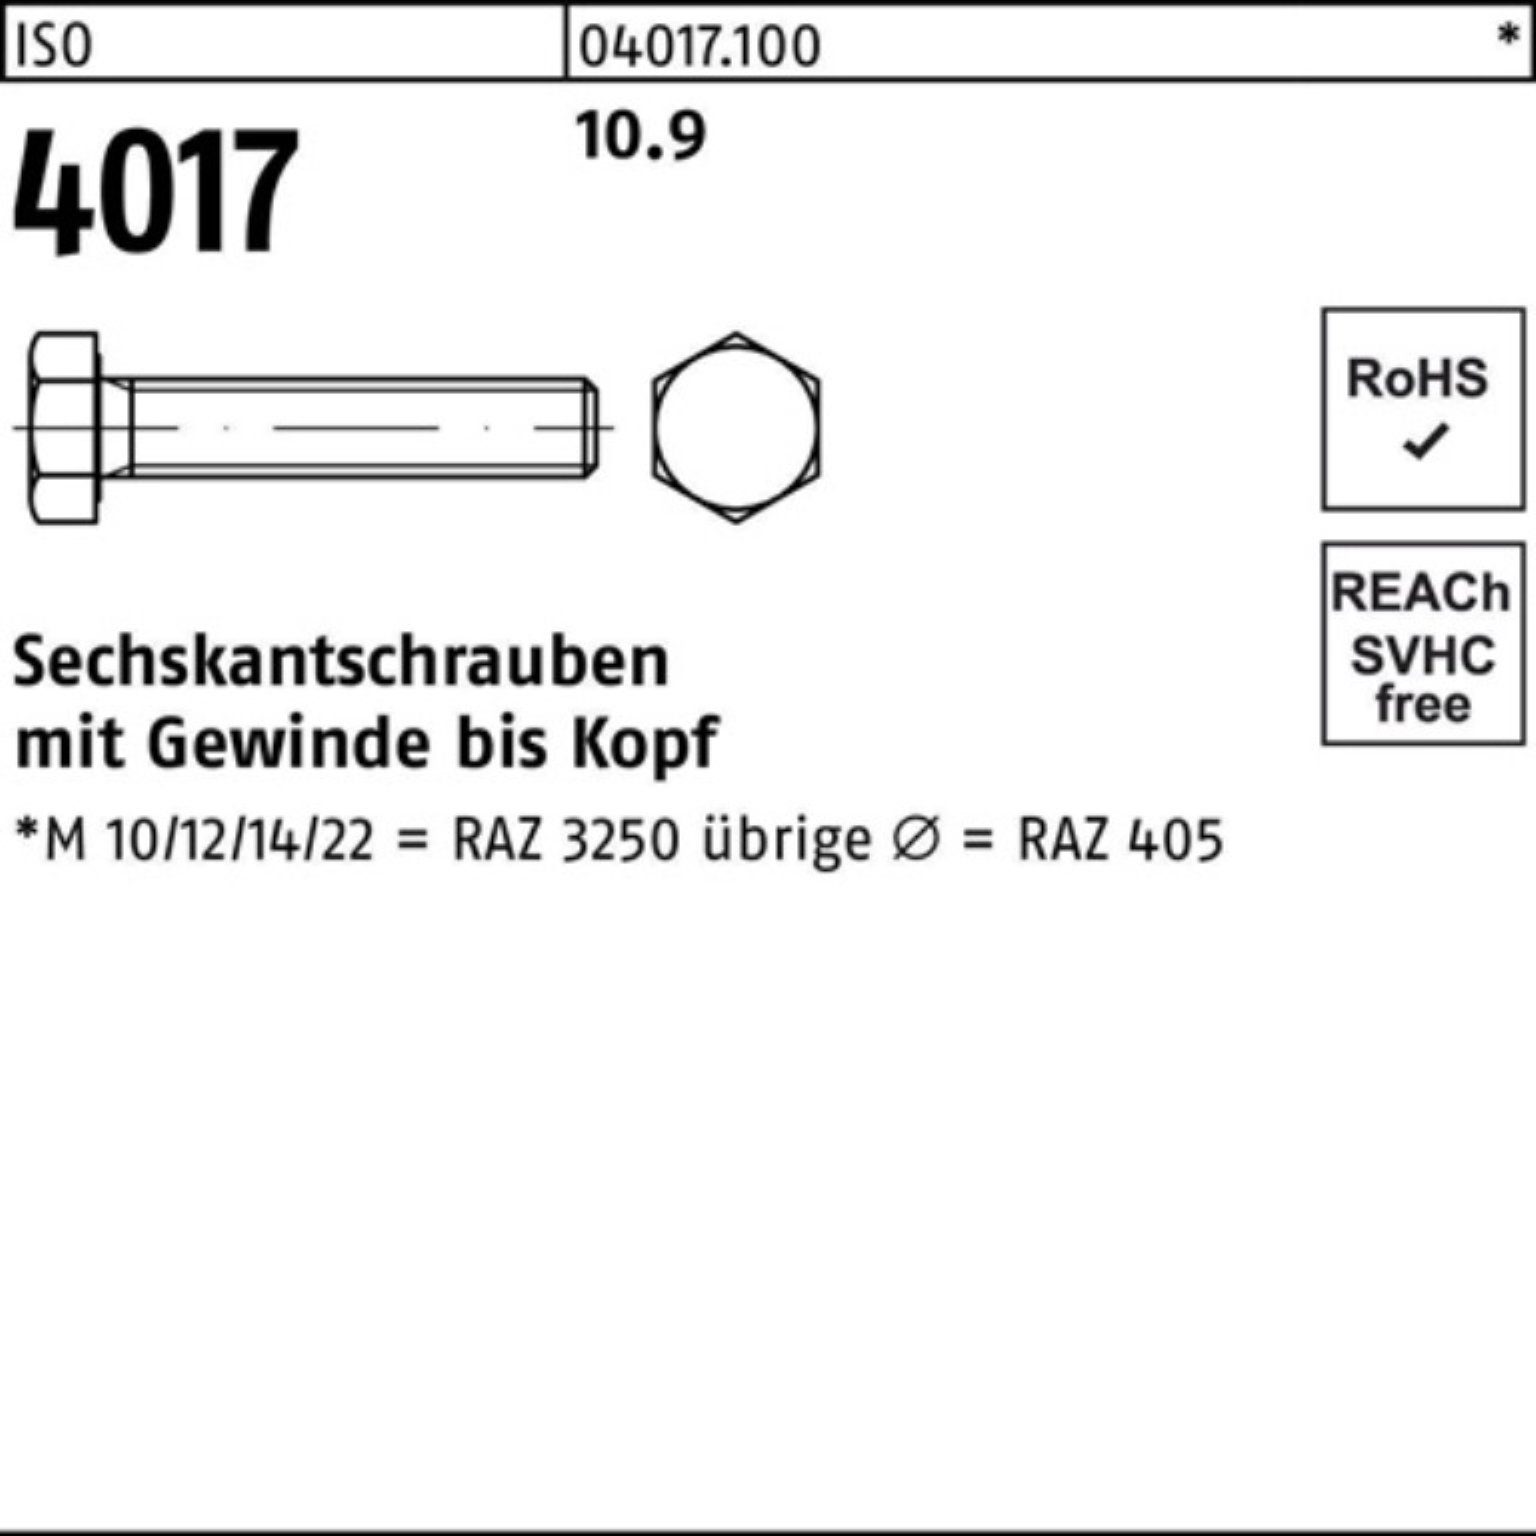 4 ISO 100er Sechskantschraube ISO Stück Bufab Sechskantschraube 110 50 4017 10.9 VG M10x Pack